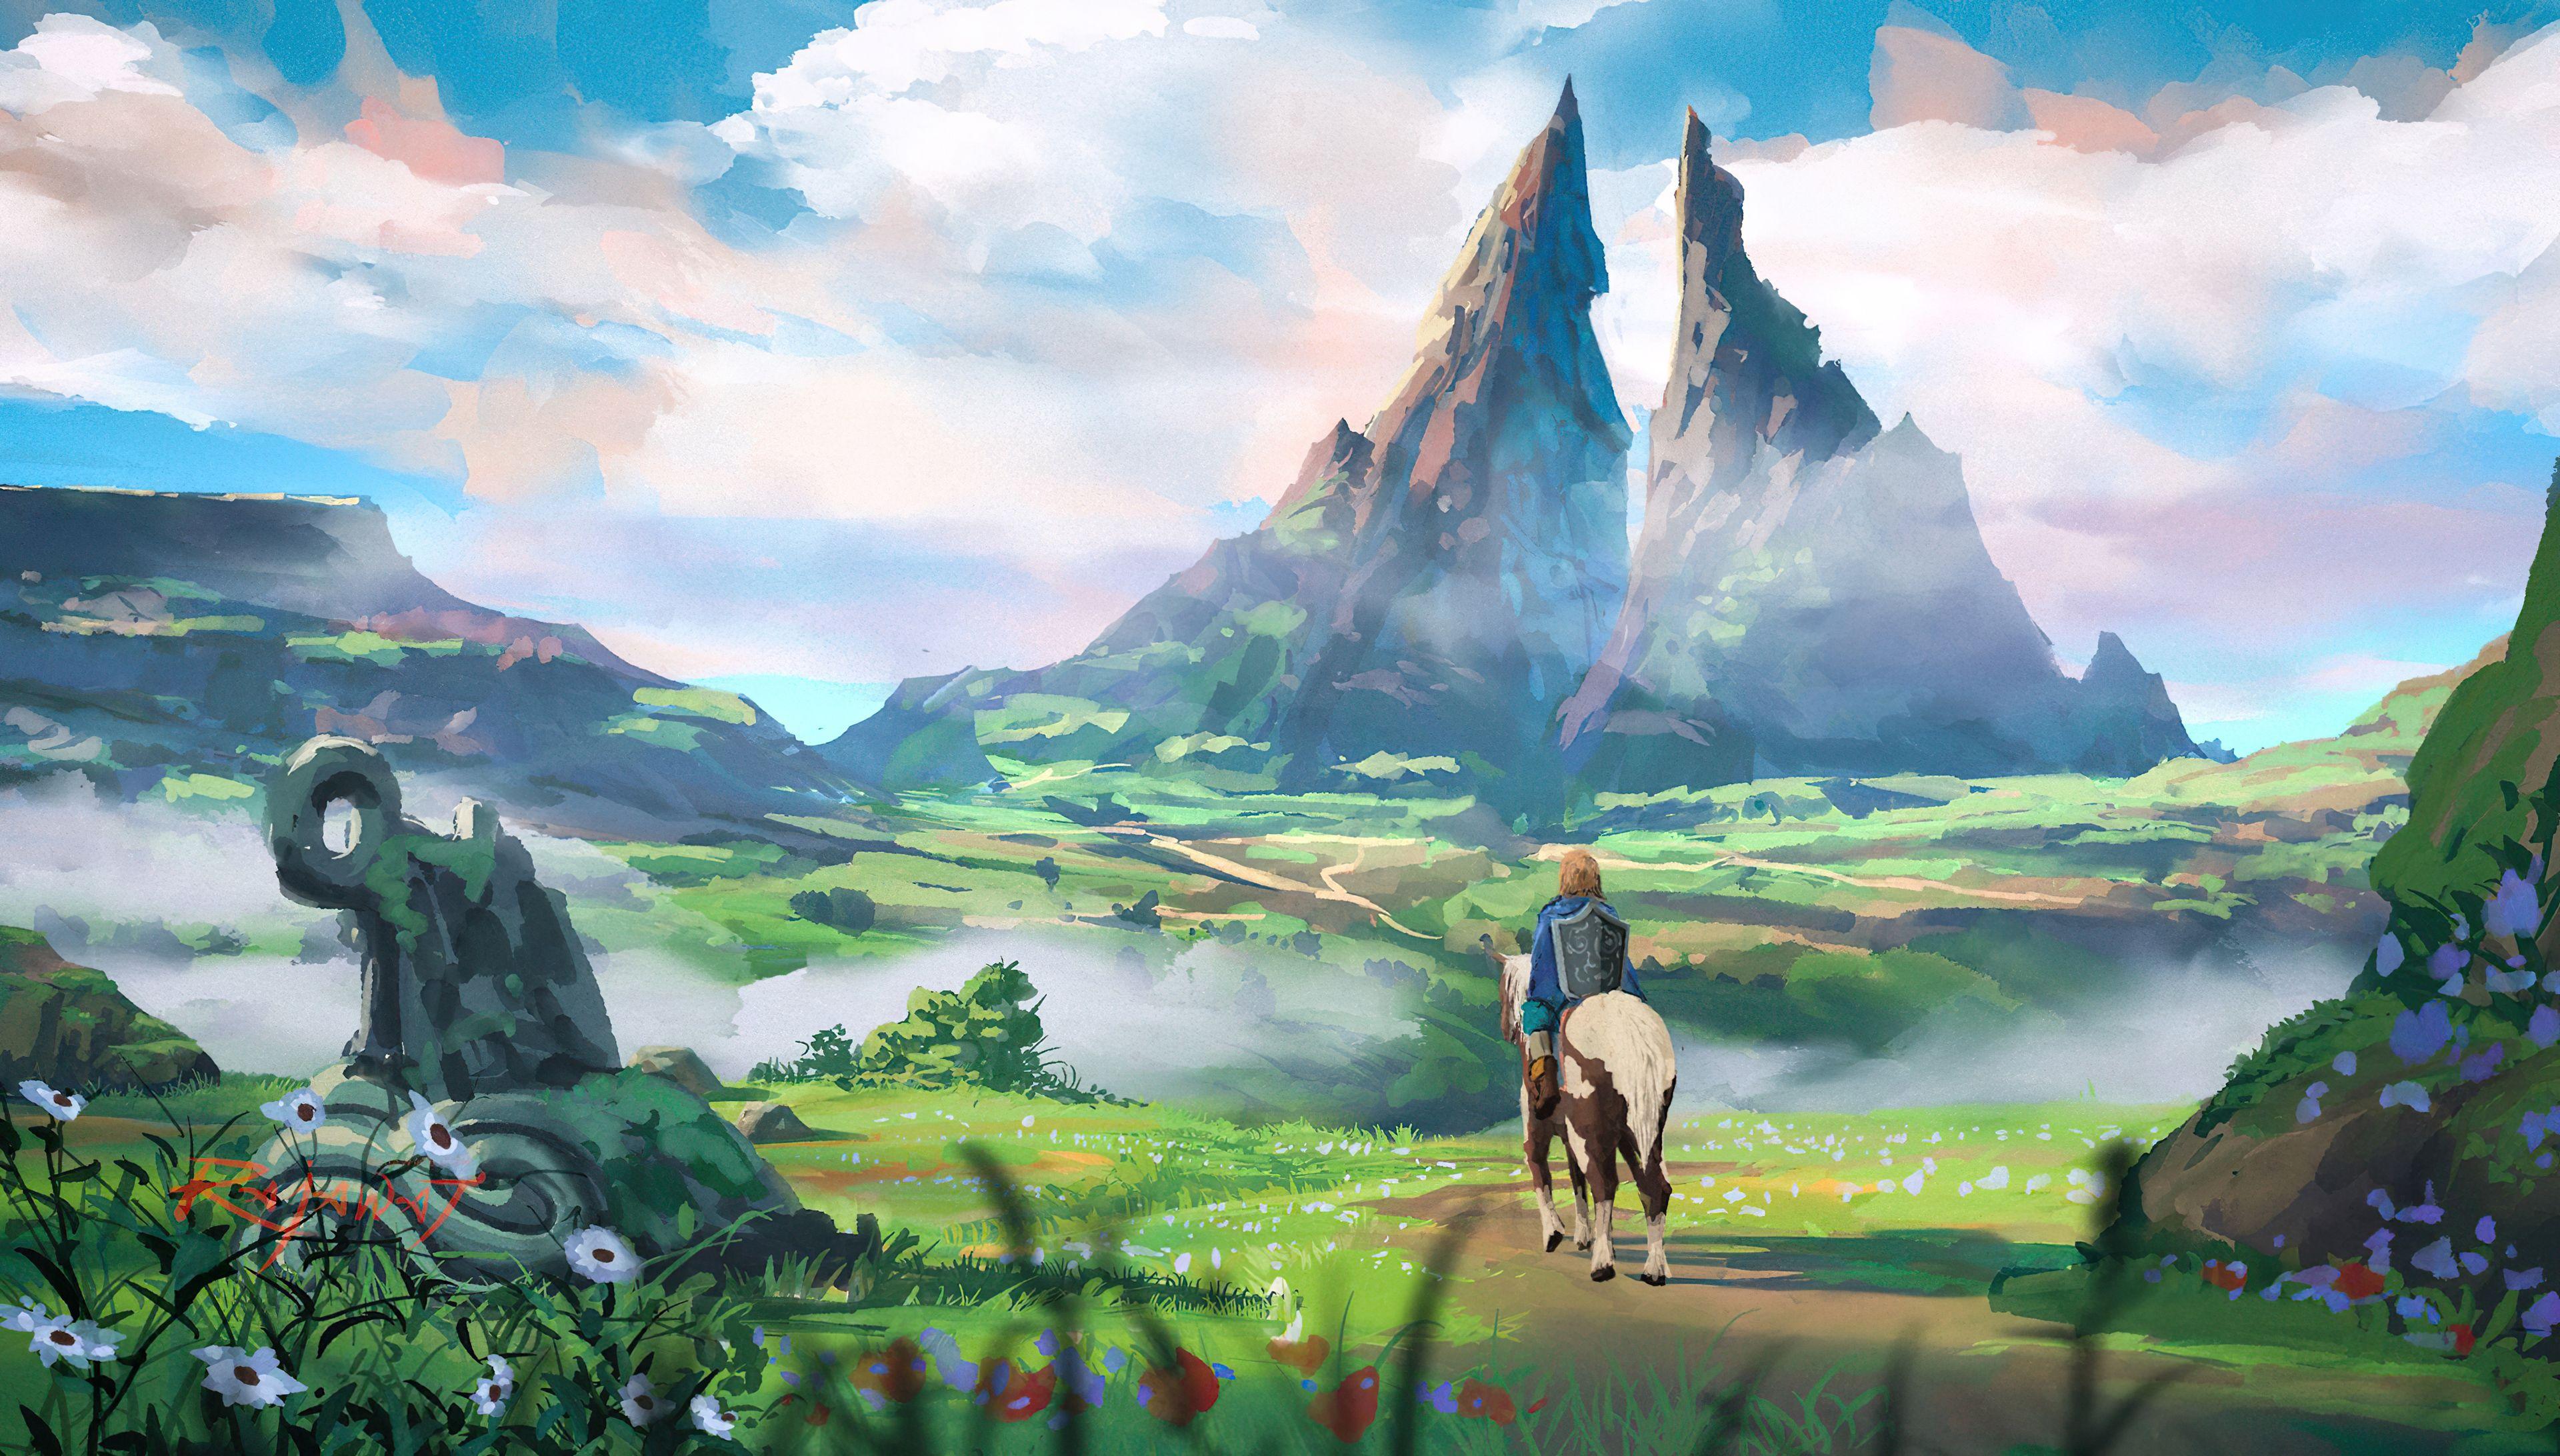 3840 x 2184 · jpeg - The Legend Of Zelda 4K Wallpapers - Wallpaper Cave